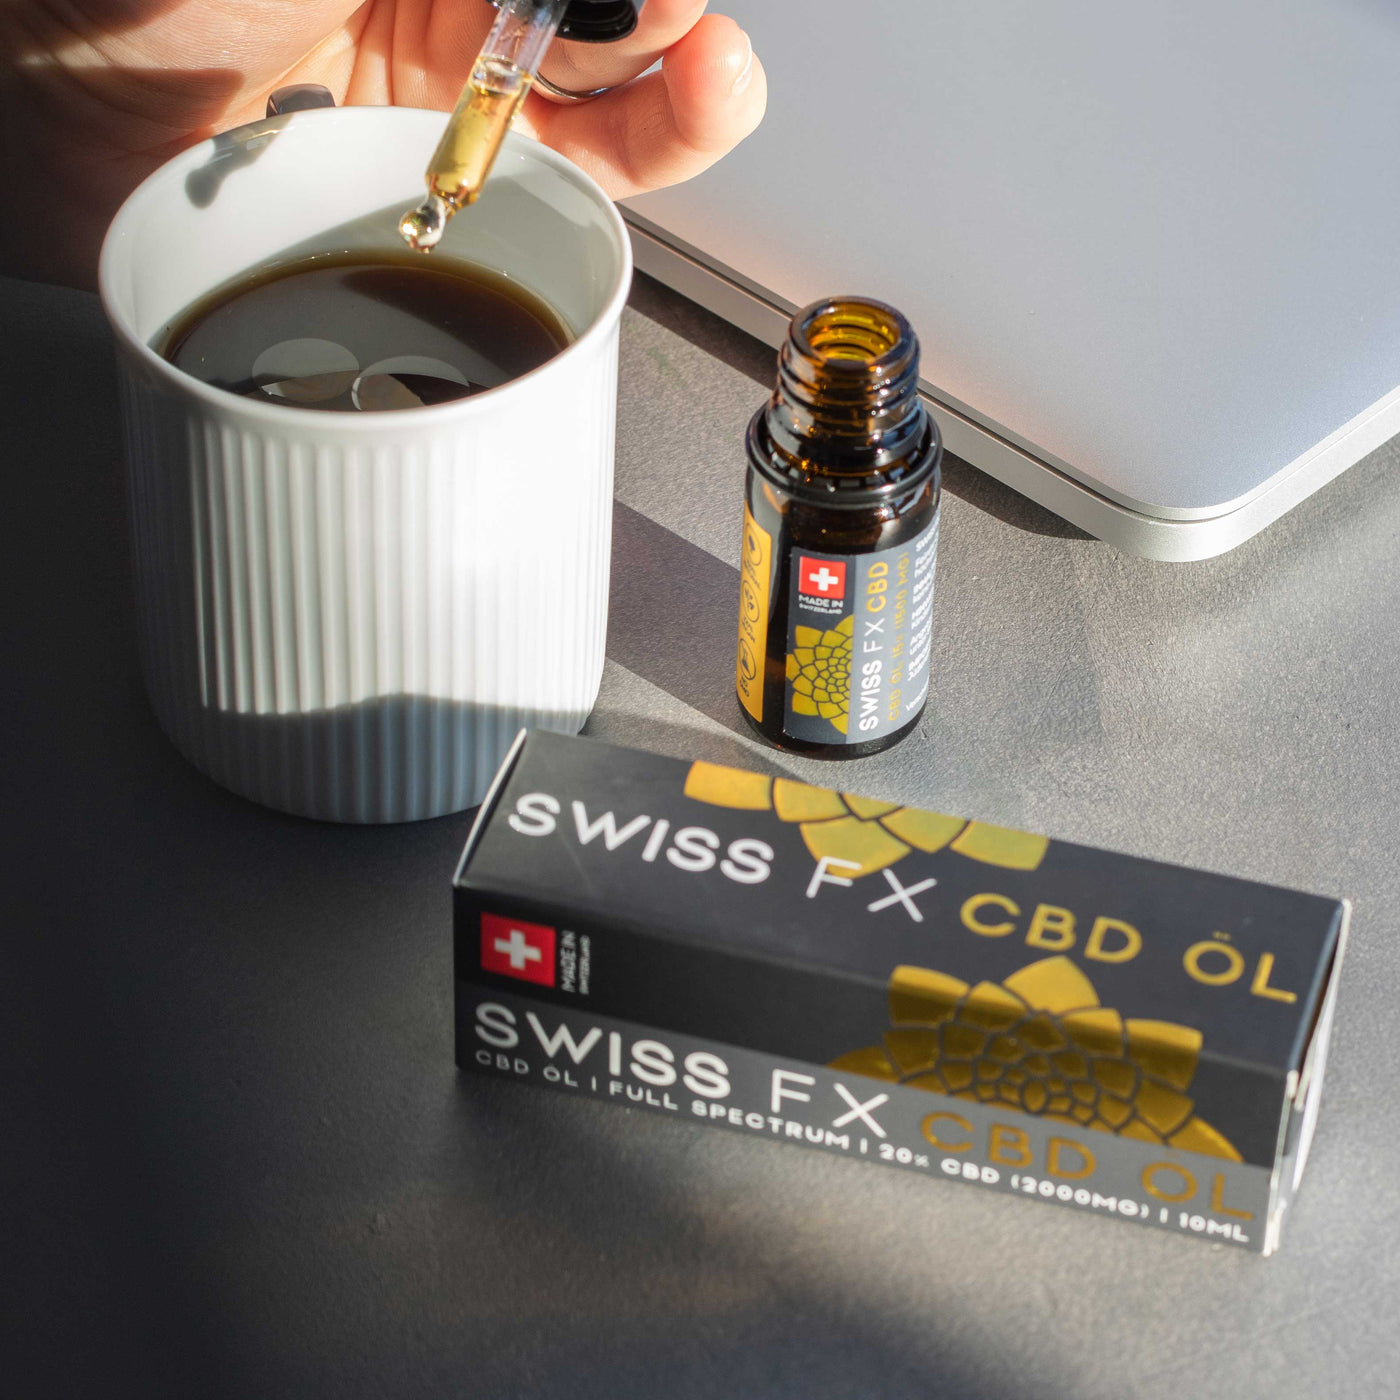 Swiss FX CBD Oil Coffee